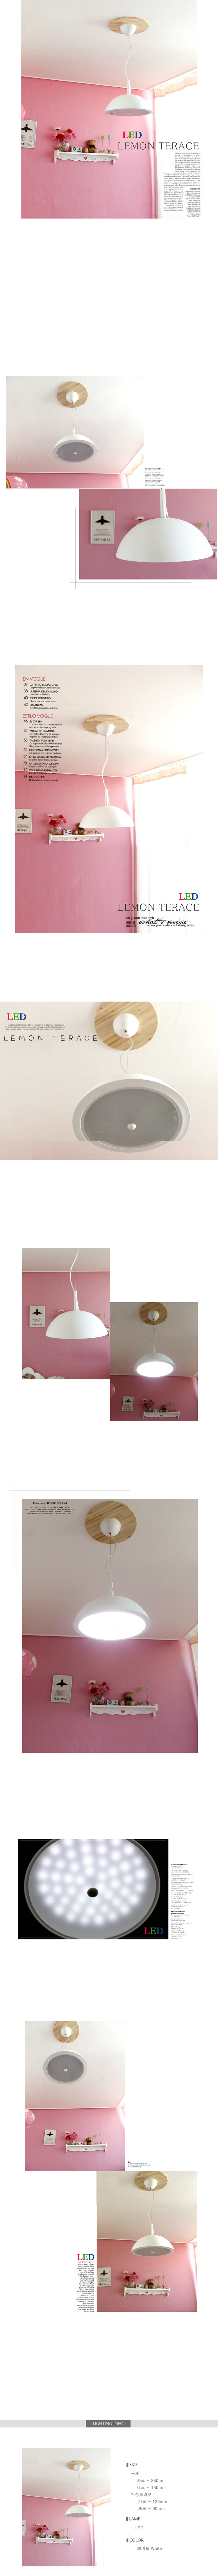 조명,LED등,벽등,거실주방인테리어,램프,덕은조명